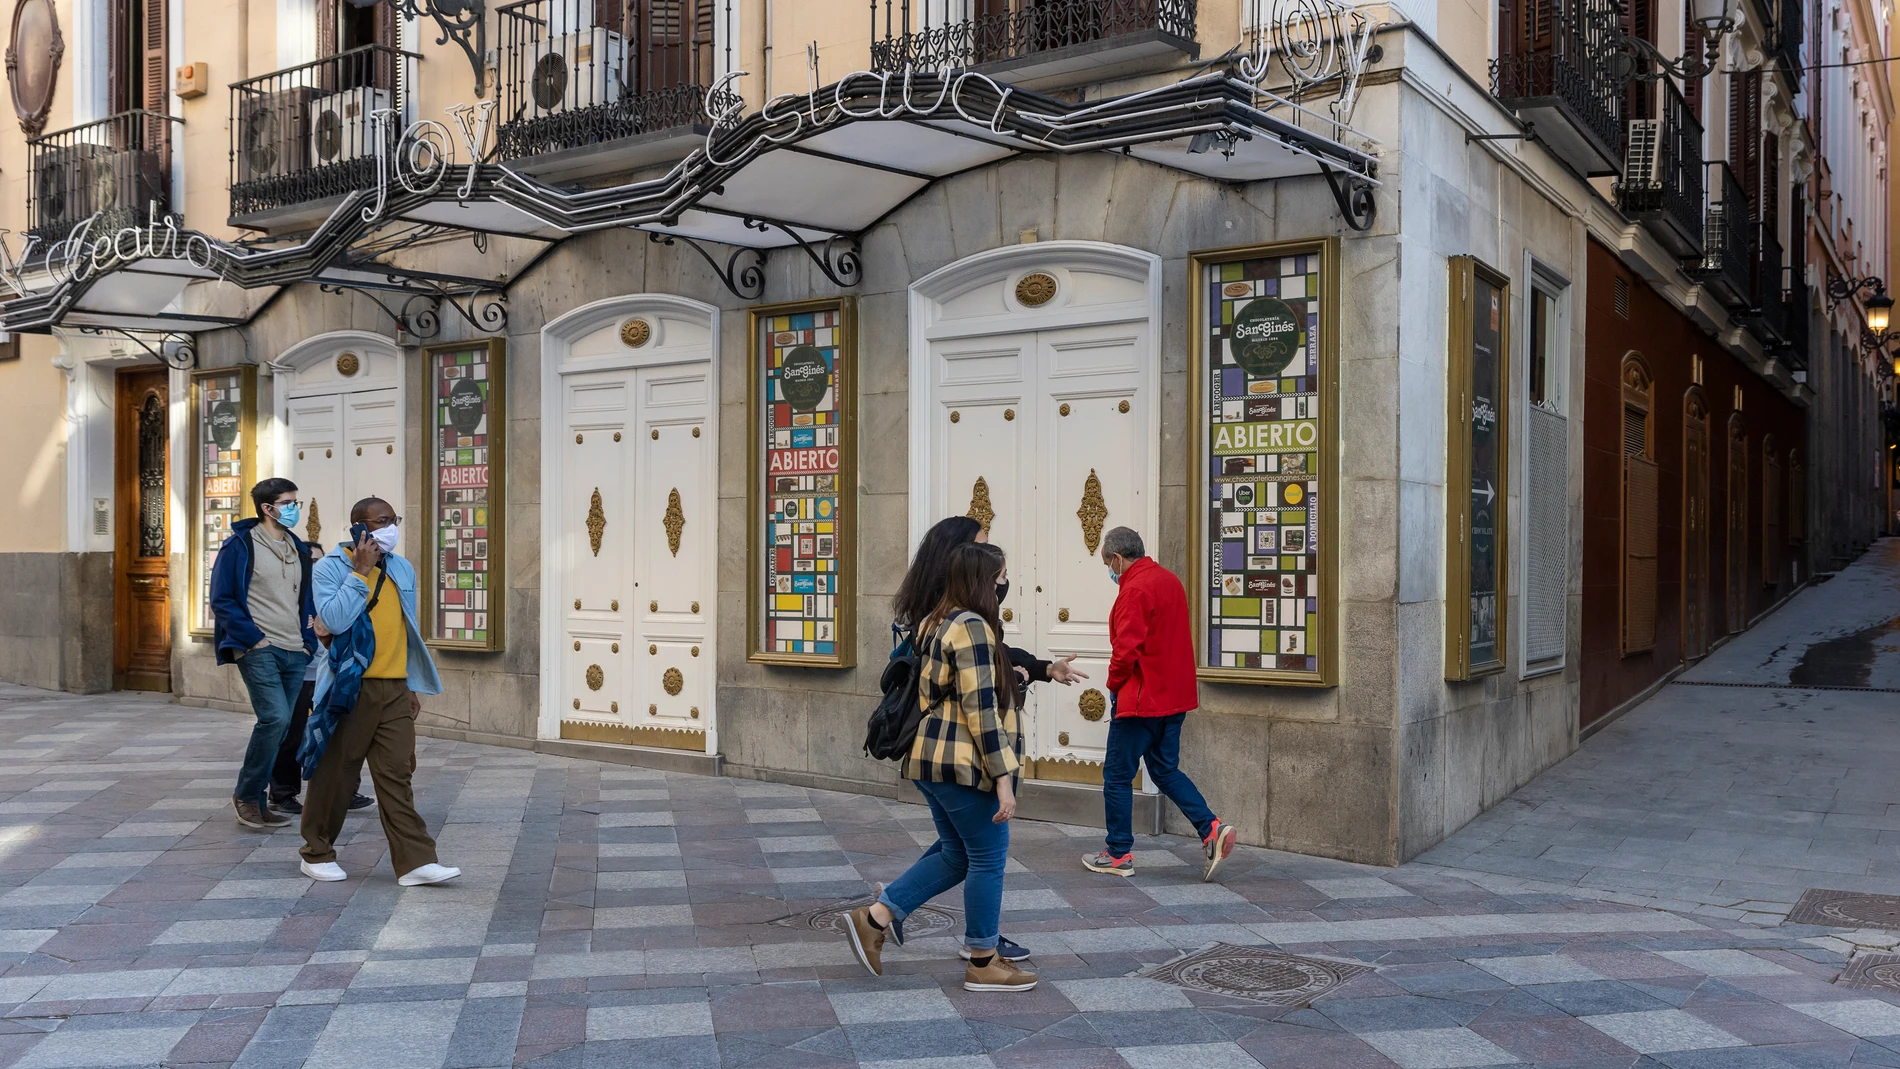 Fachadas de establecimientos famosos de Madrid que han tenido que cerrar debido a la crisis económica provocada por la Covid-19. Discoteca Joy Eslava